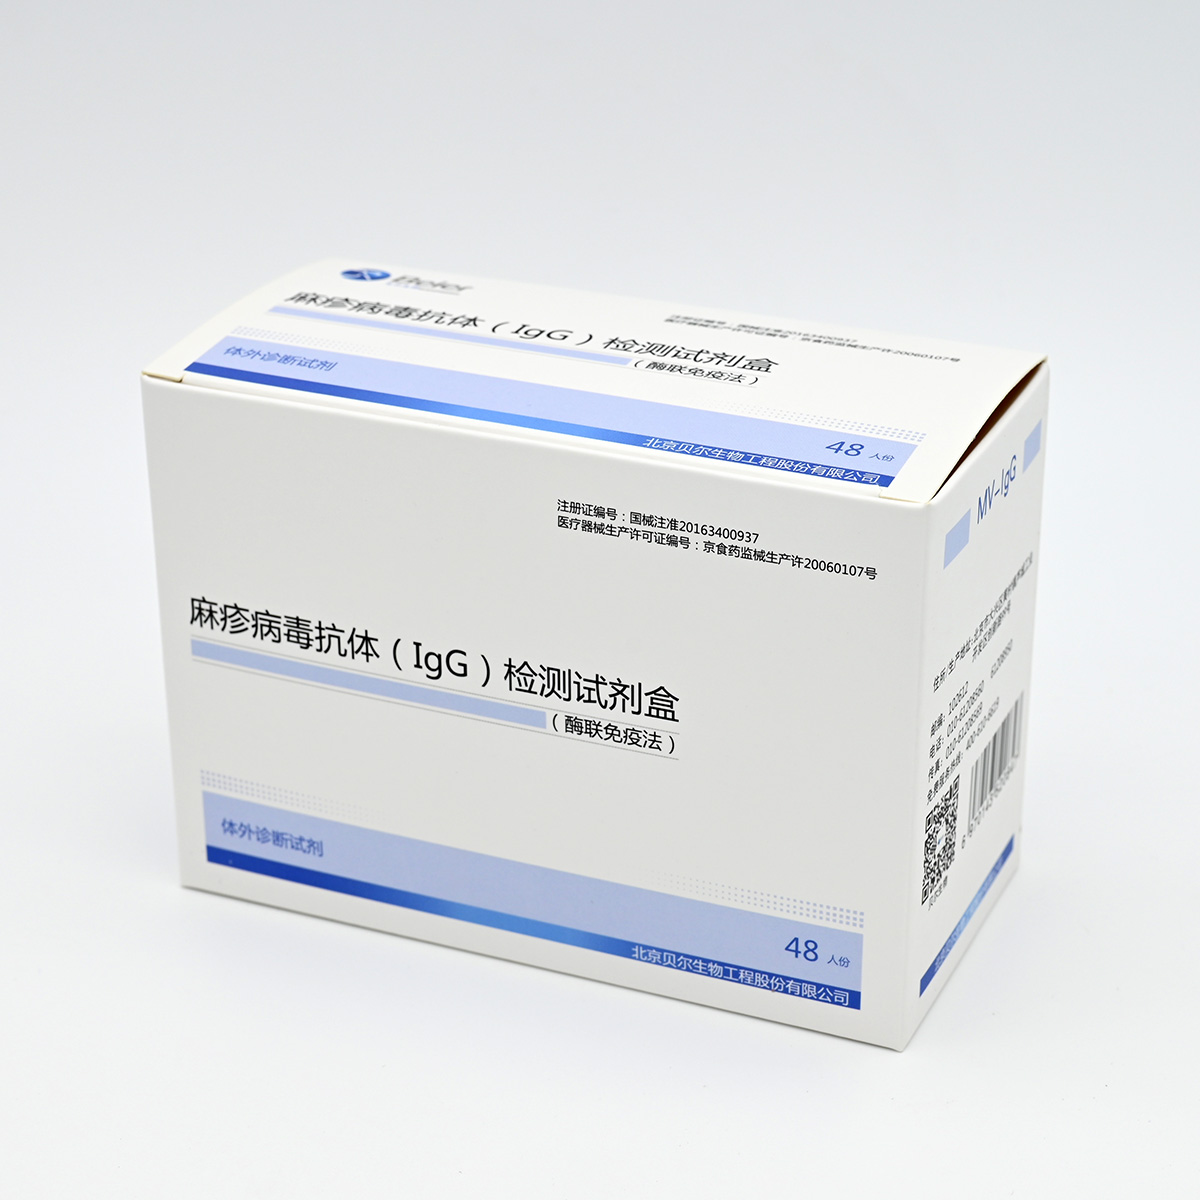 【贝尔】麻疹病毒抗体(IgG)检测试剂盒(酶联免疫法)